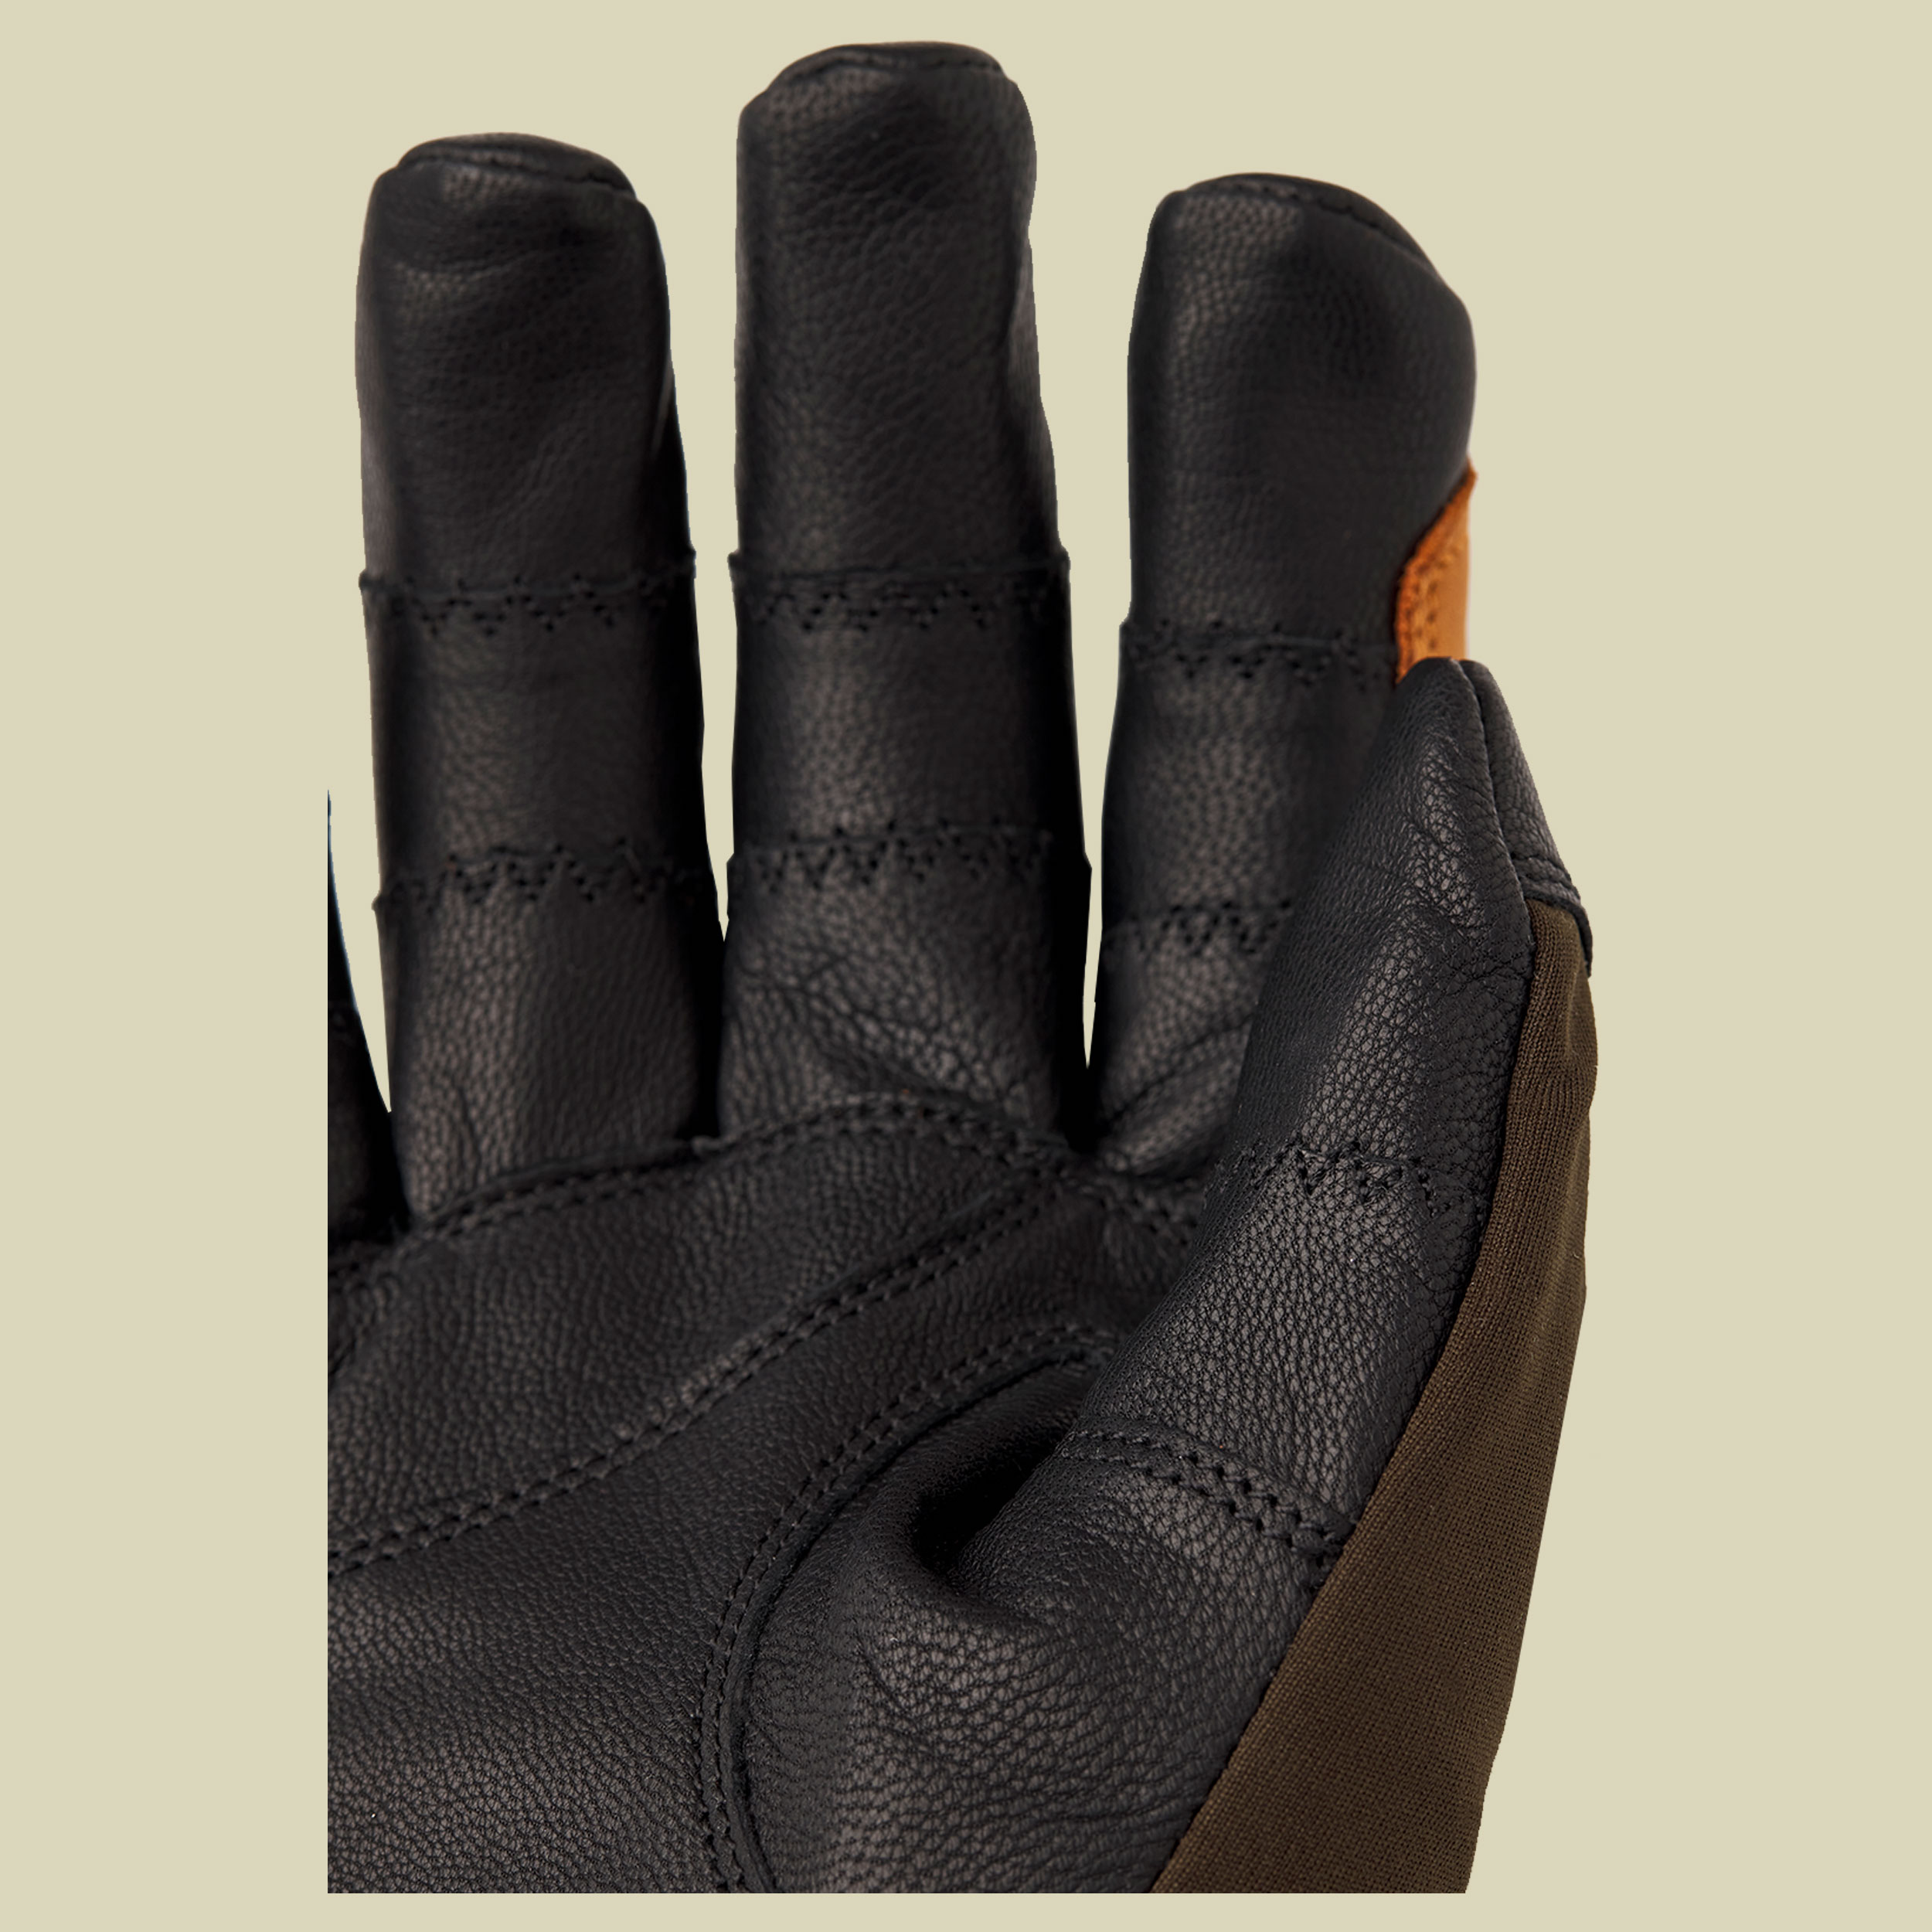 Ergo Grip Active Wool Terry Größe 7 Farbe dark forest/black